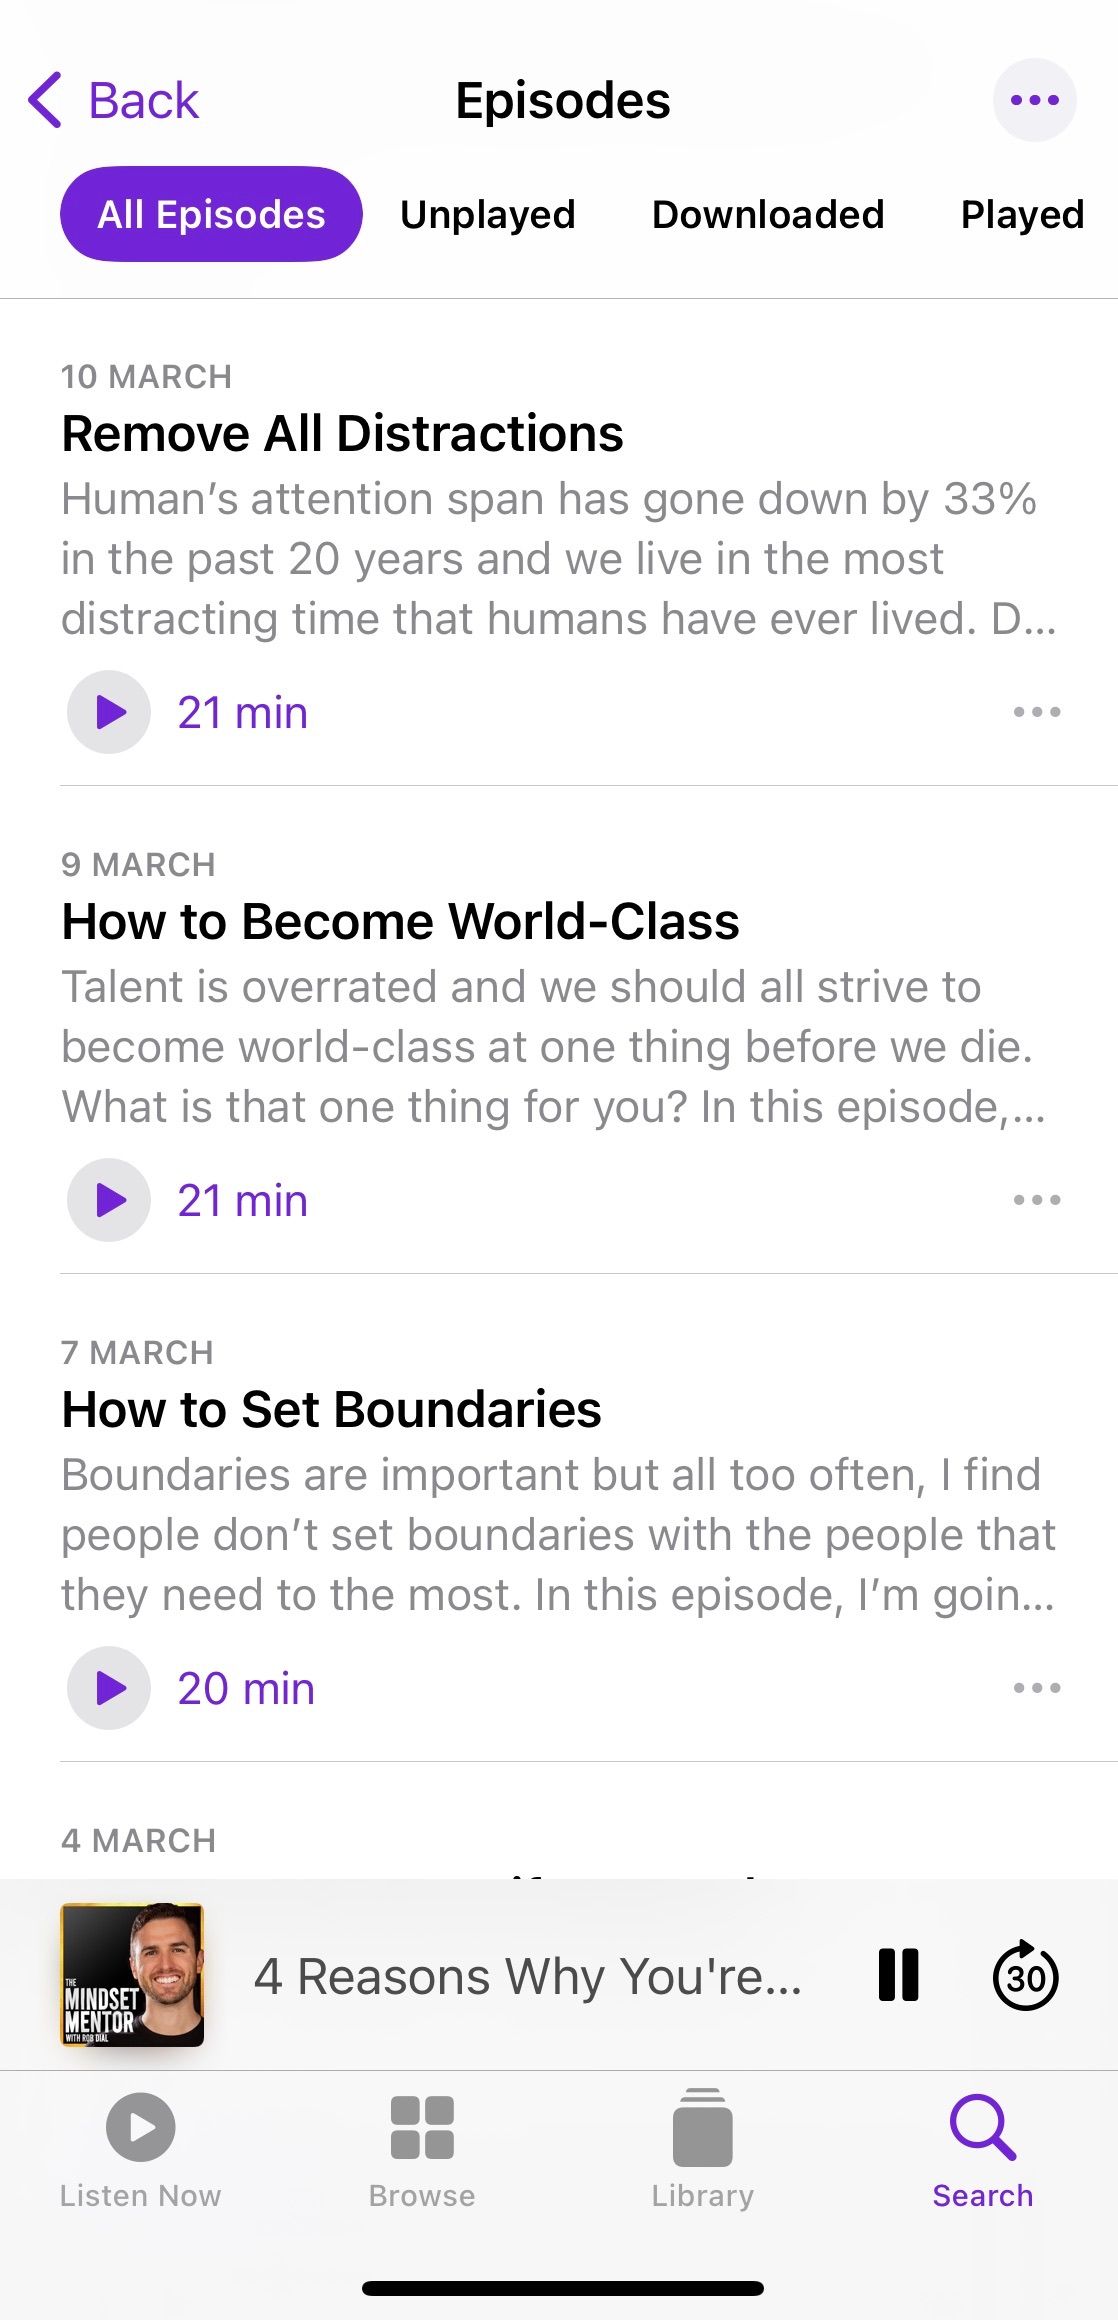 Screenshot showing sample episodes of podcast The Mindset Mentor